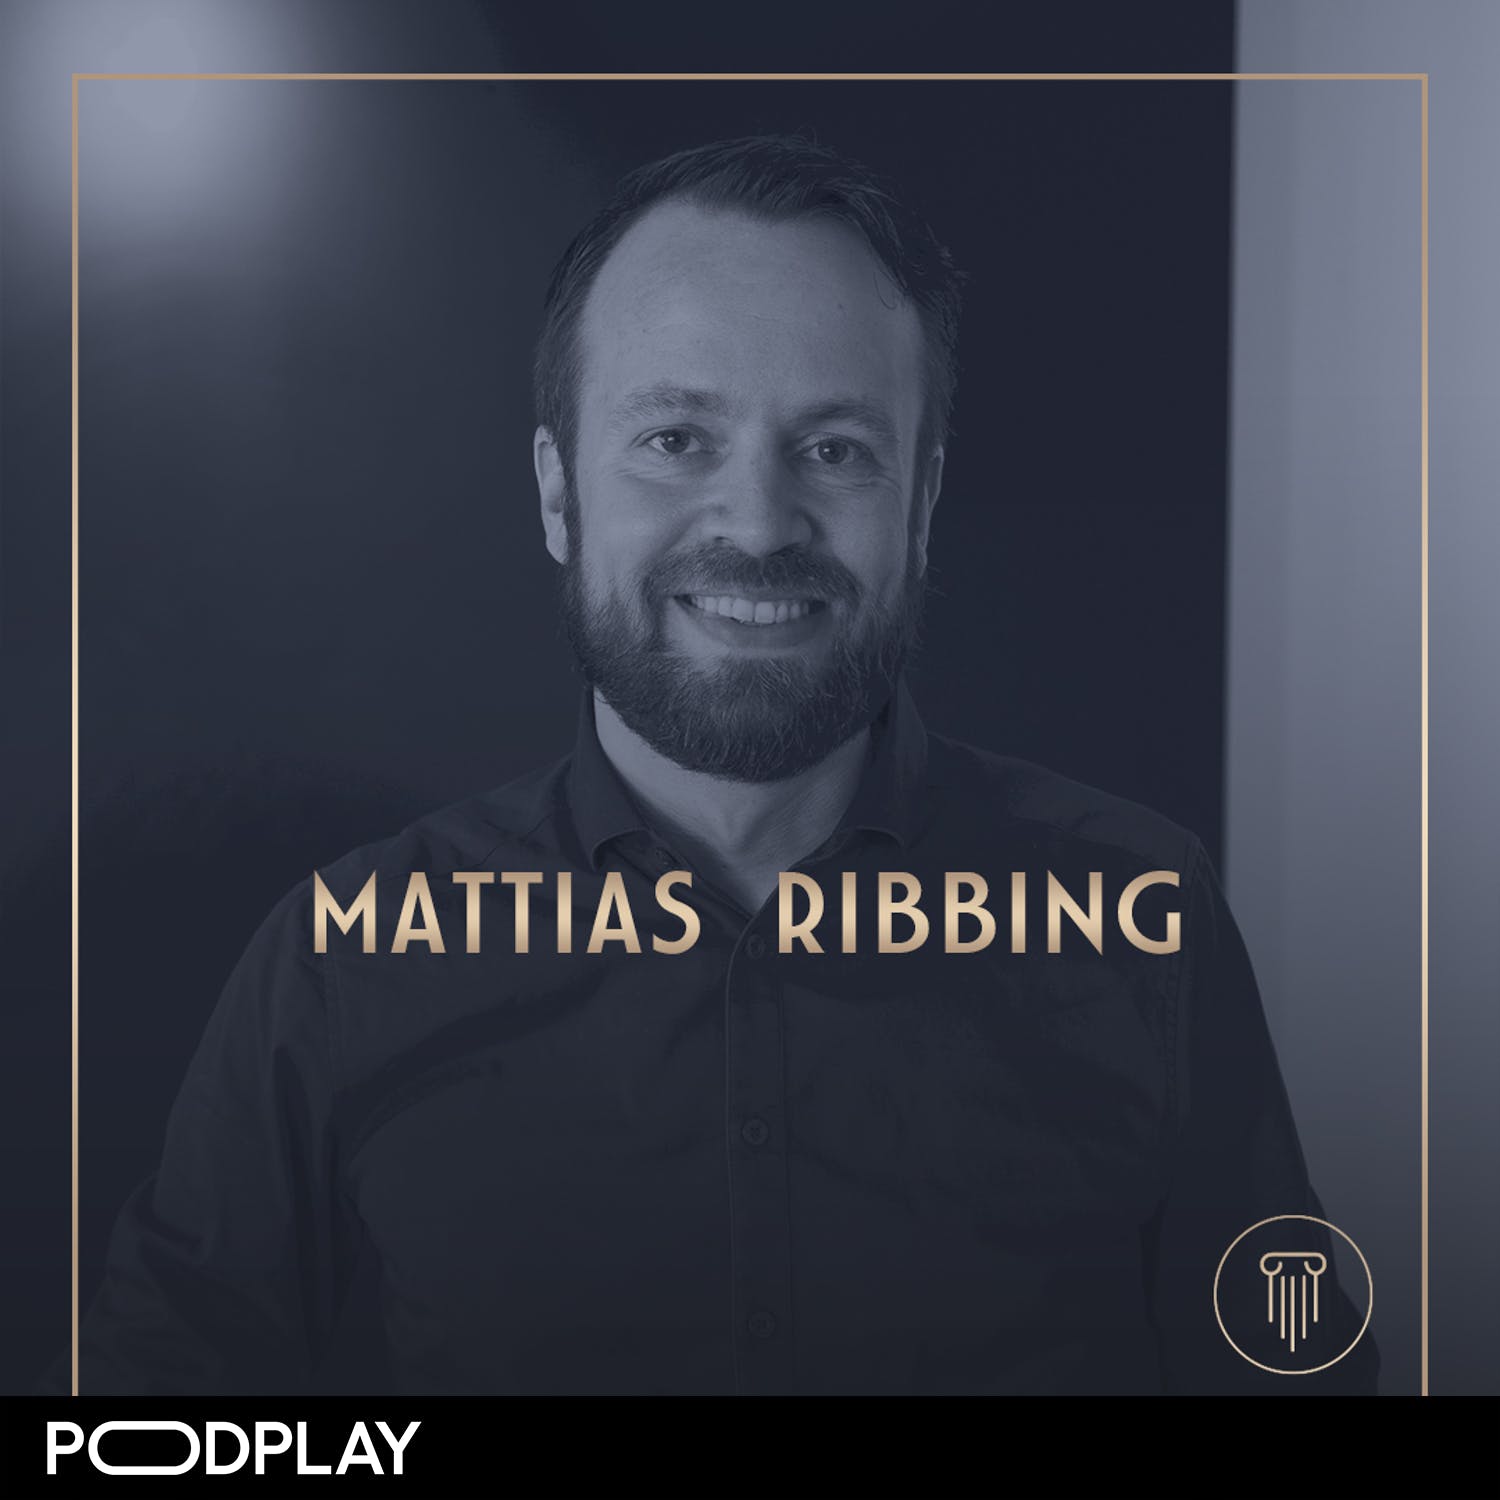 318. Mattias Ribbing - Bli minnesmästare i vardagen, Original